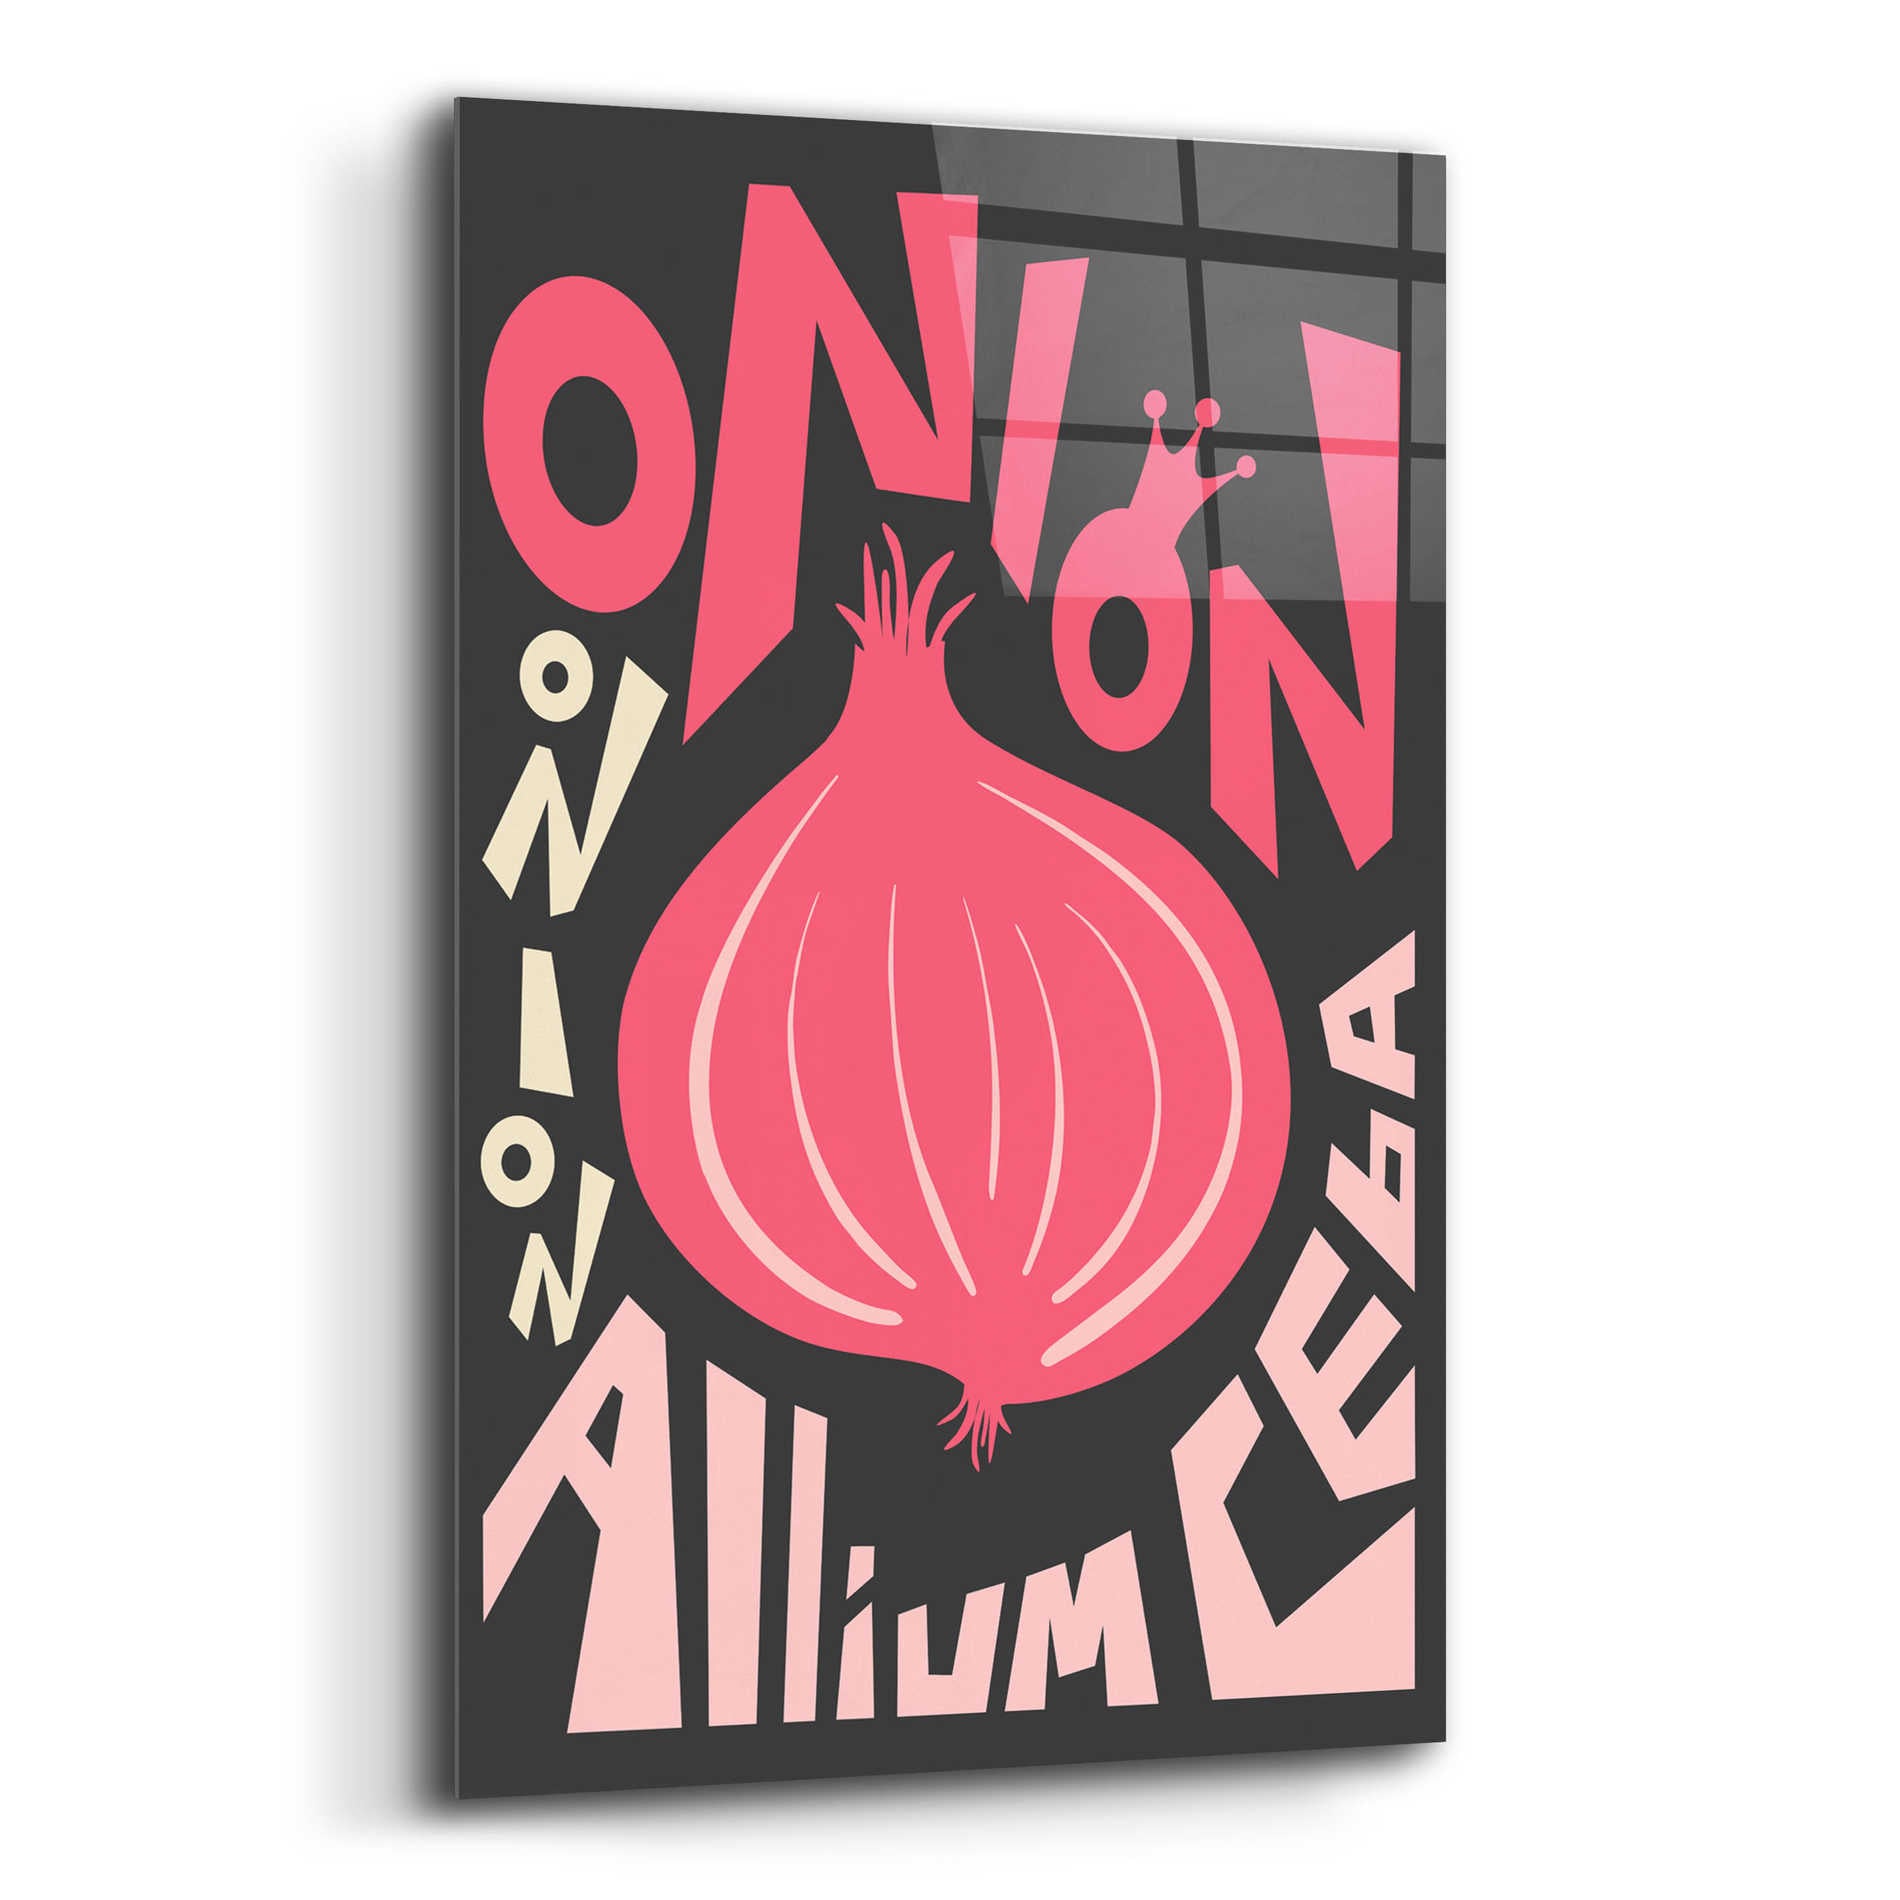 Epic Art 'Kitchen Onion' by Ayse, Acrylic Glass Wall Art,16x24